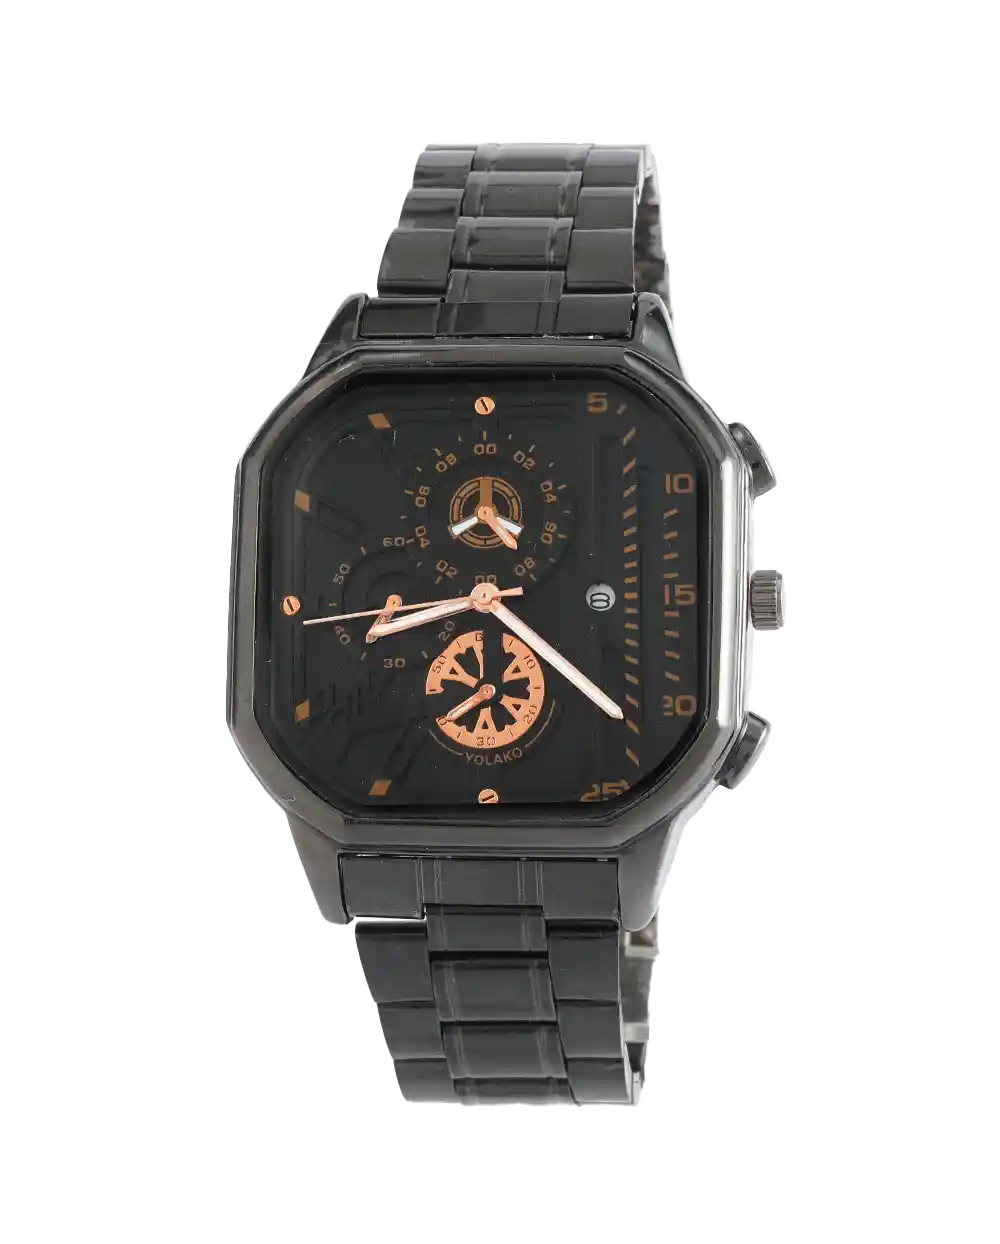 خرید ساعت مچی مردانه جینوا GENEVA مدل 2093 رنگ نمشکی و صفحه مشکی رنگ ثابت بهترین قیمت به همراه ارسال رایگان و جعبه ی کادویی